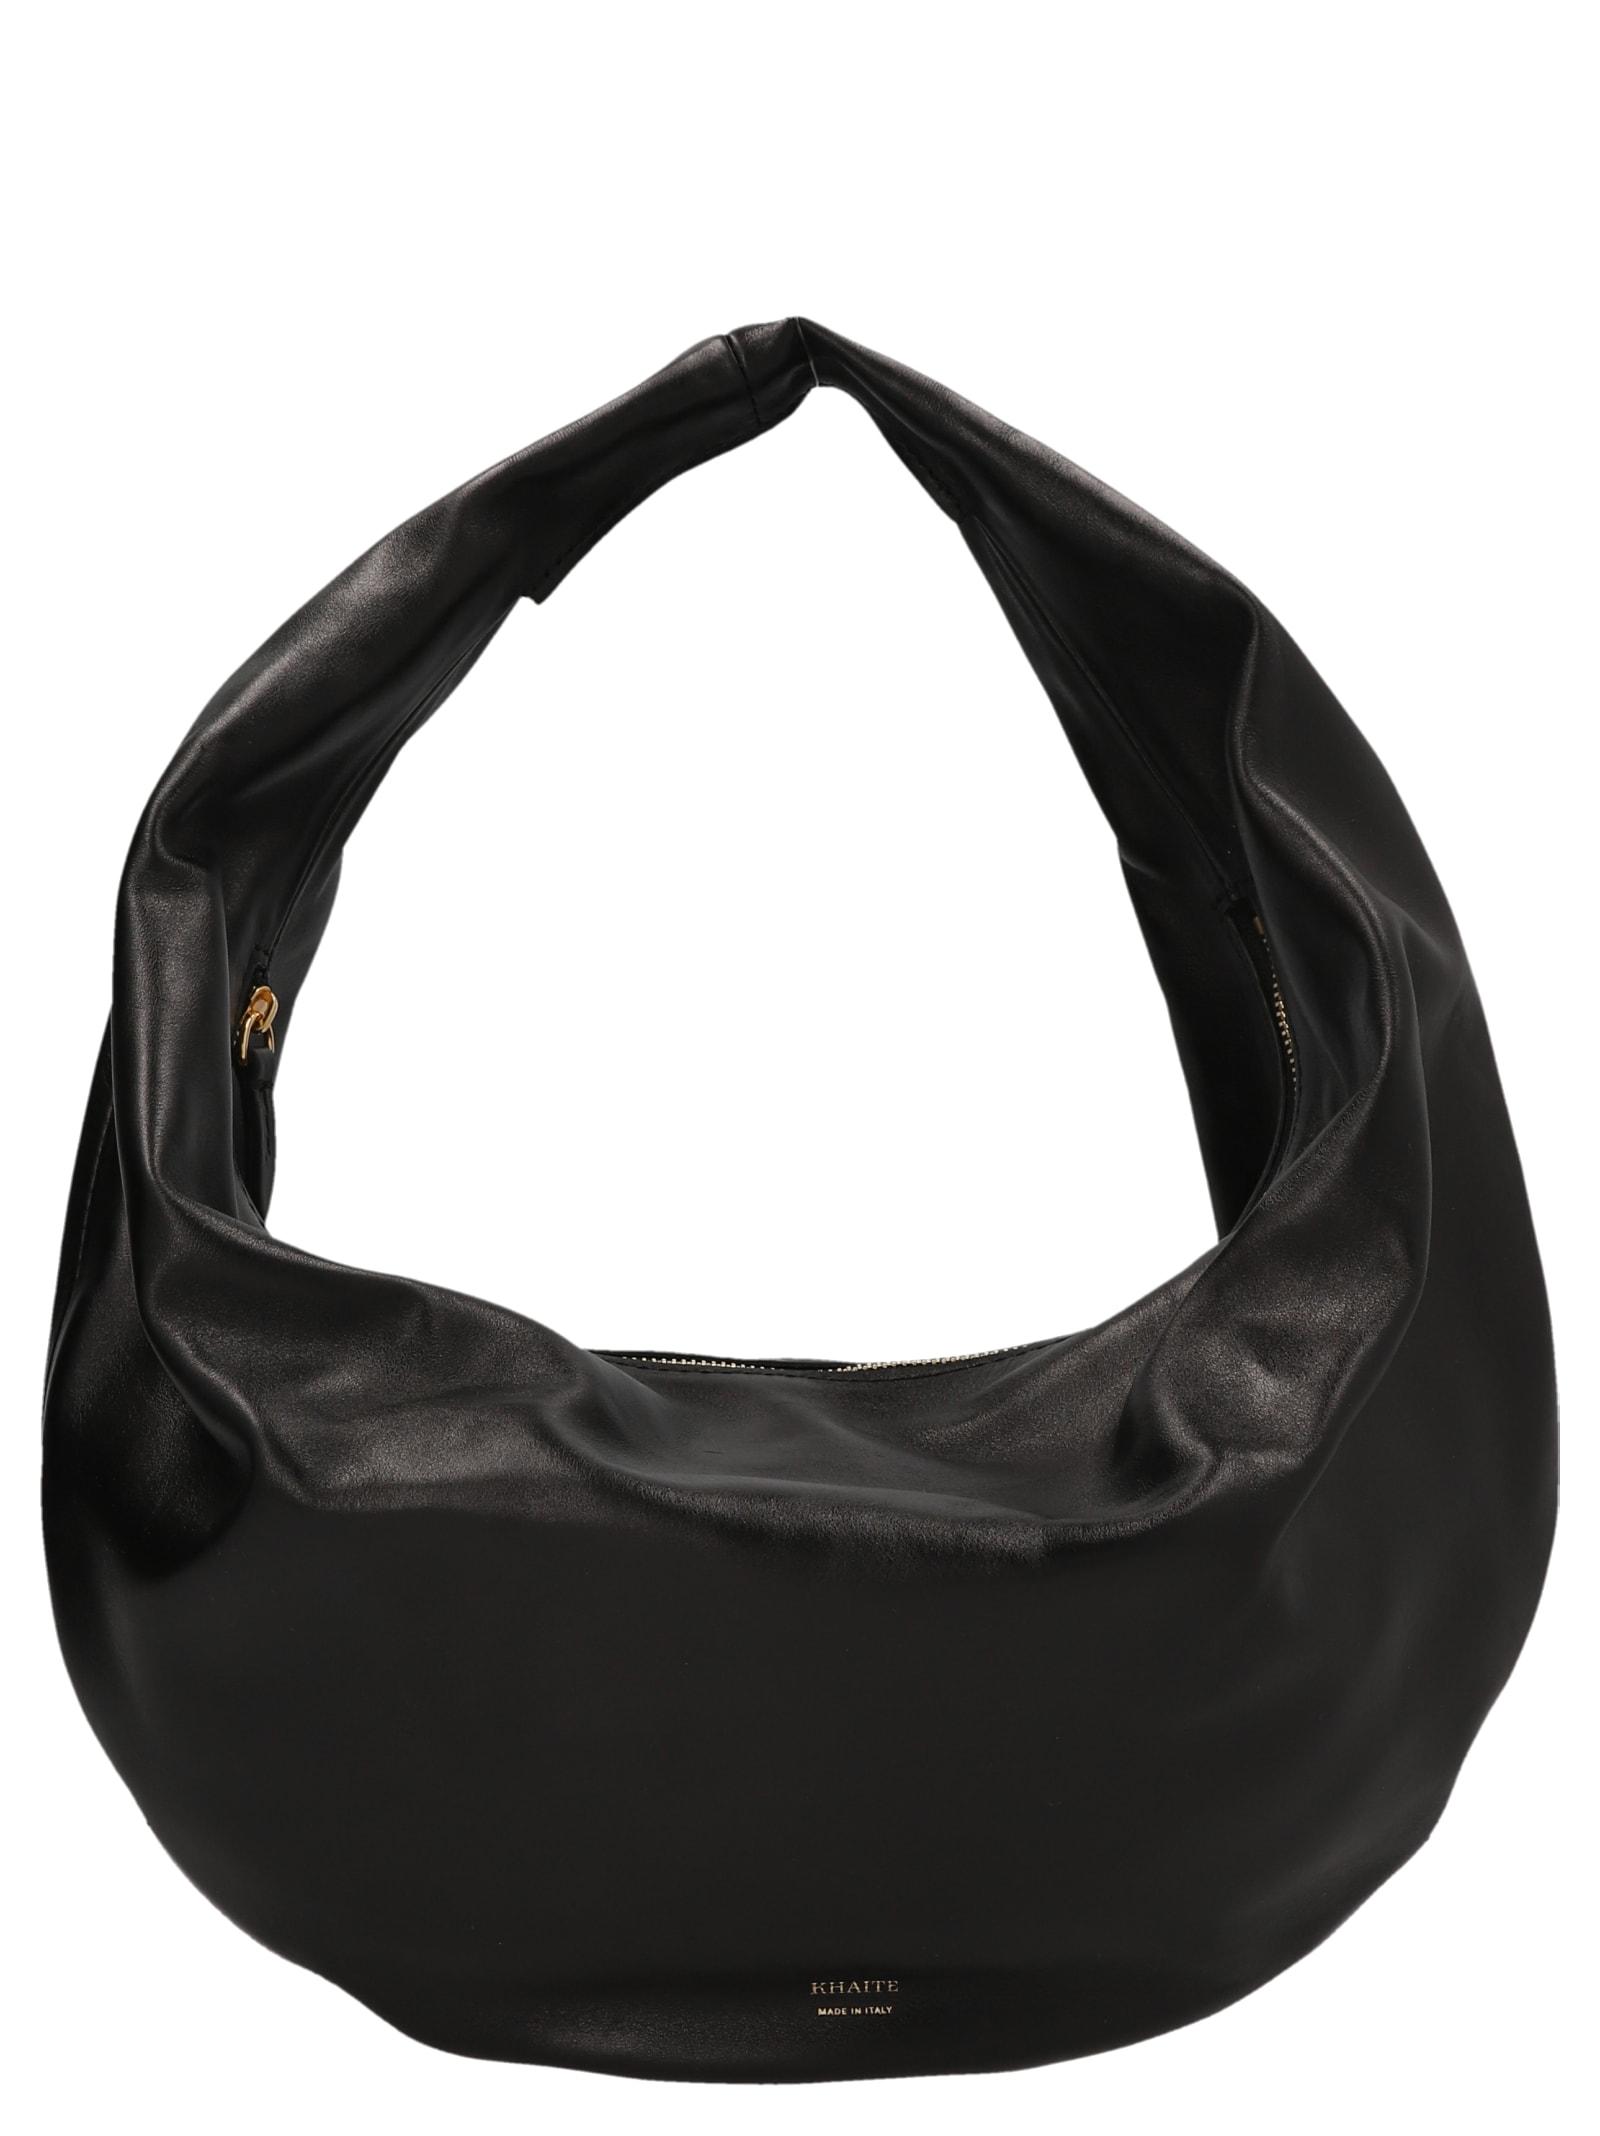 Khaite The Medium Olivia Hobo Shoulder Bag in Black | Lyst